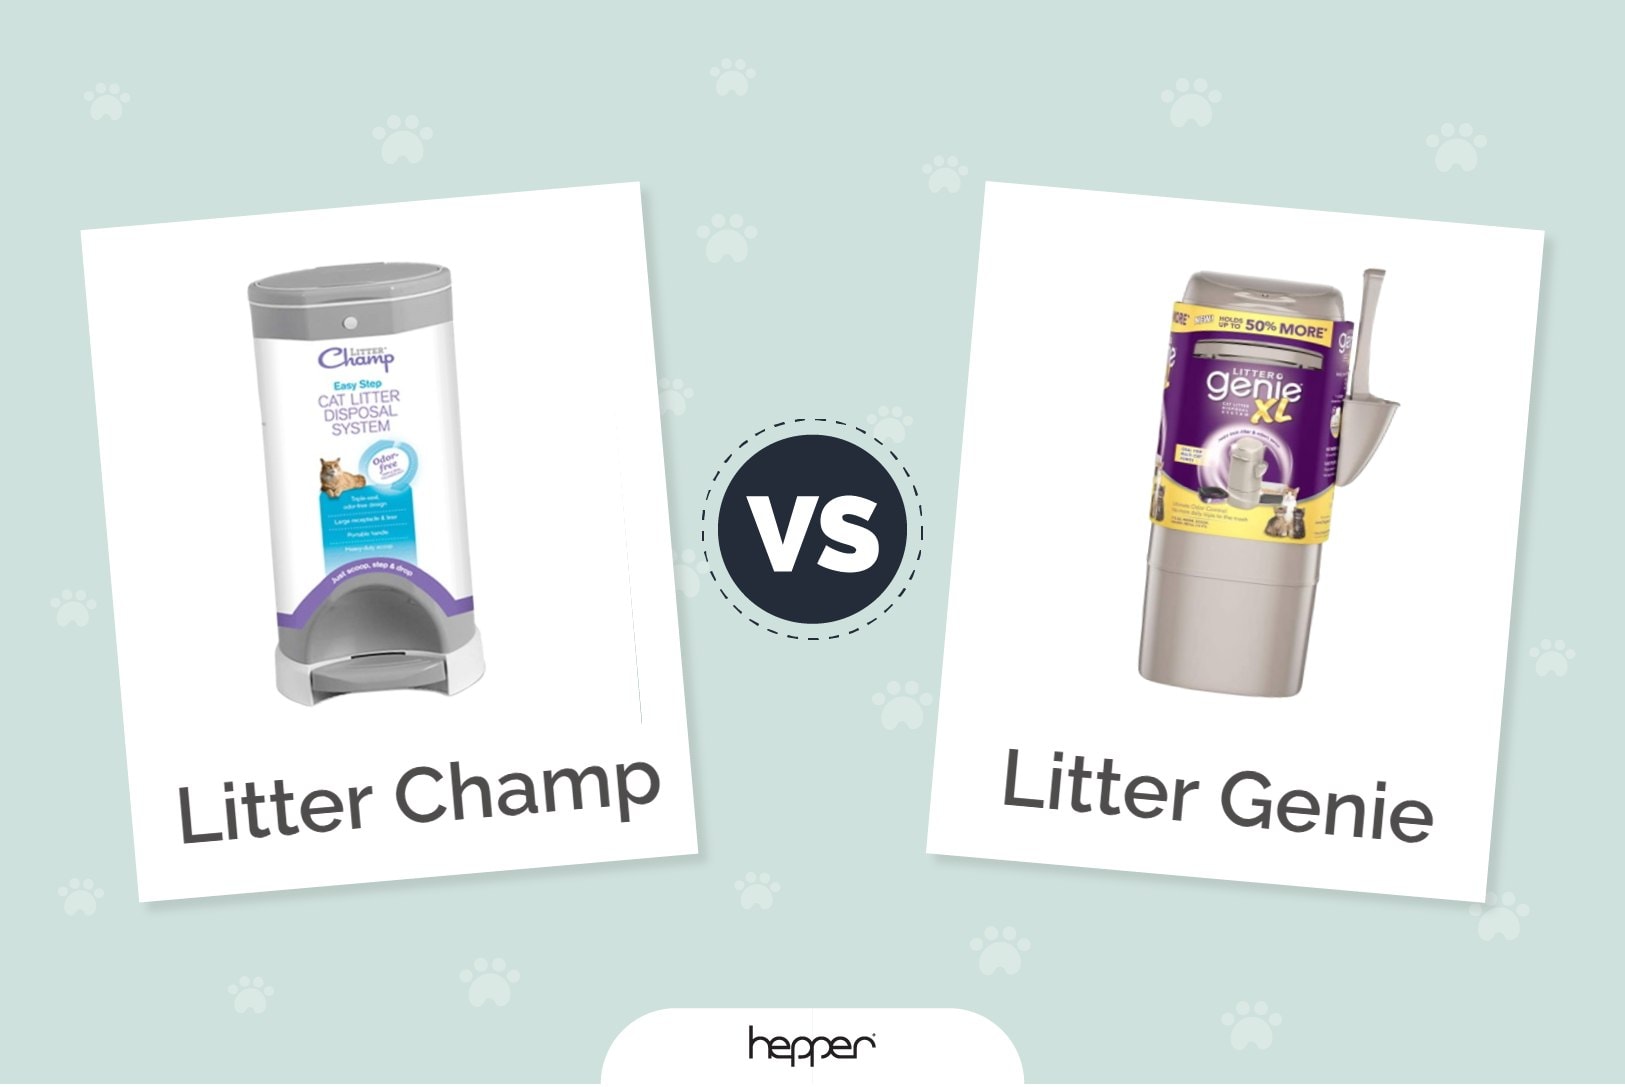 Litter Champ versus Litter Genie - FT